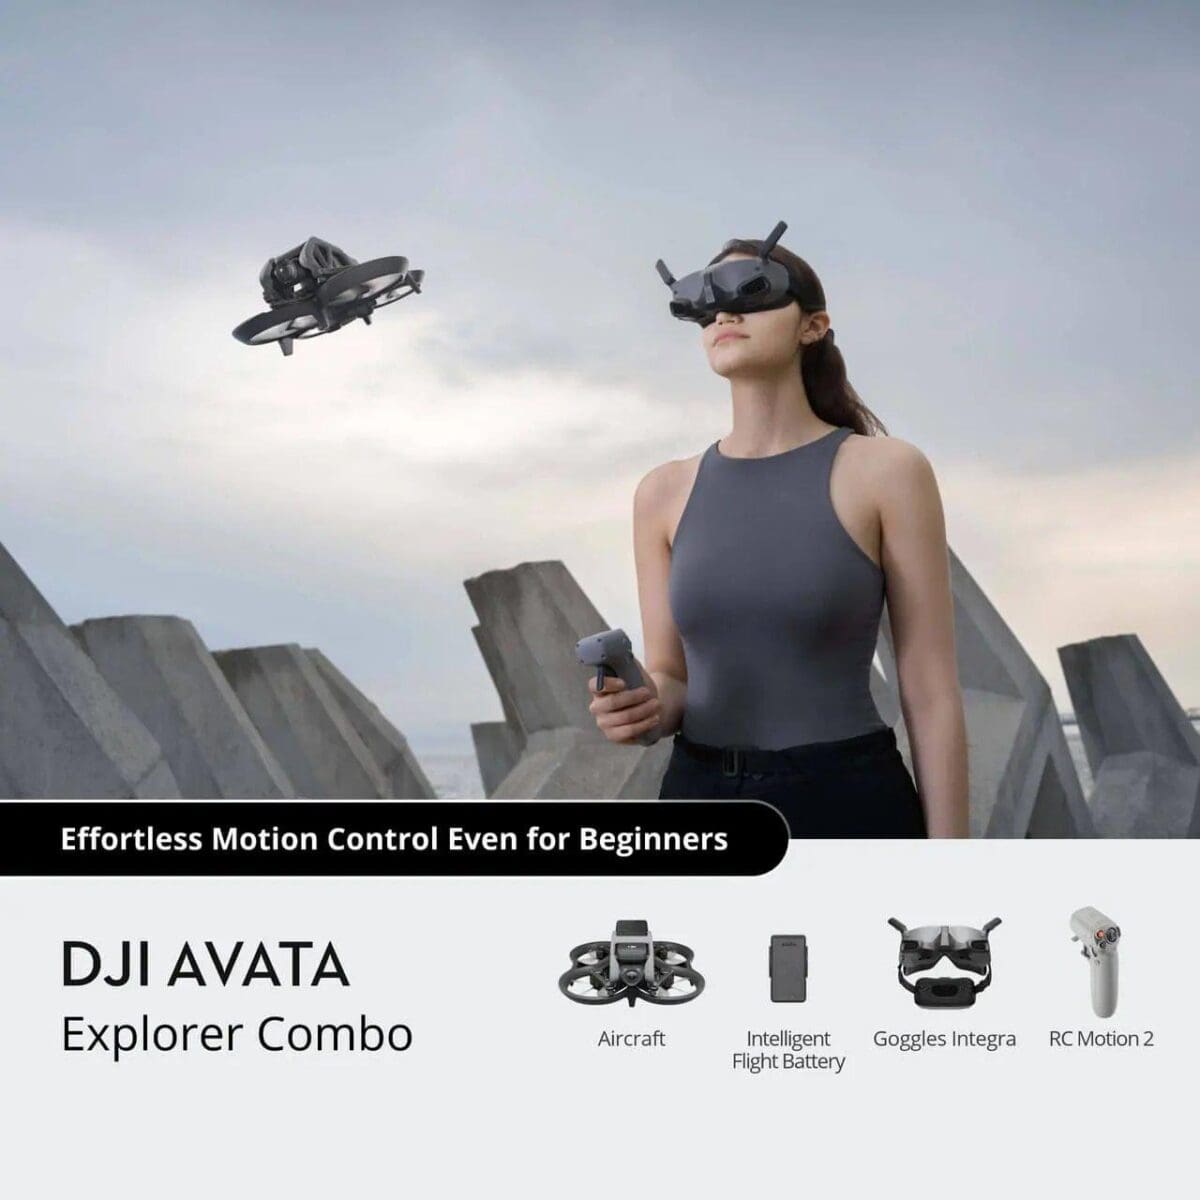 DJI Avata Explorer Combo